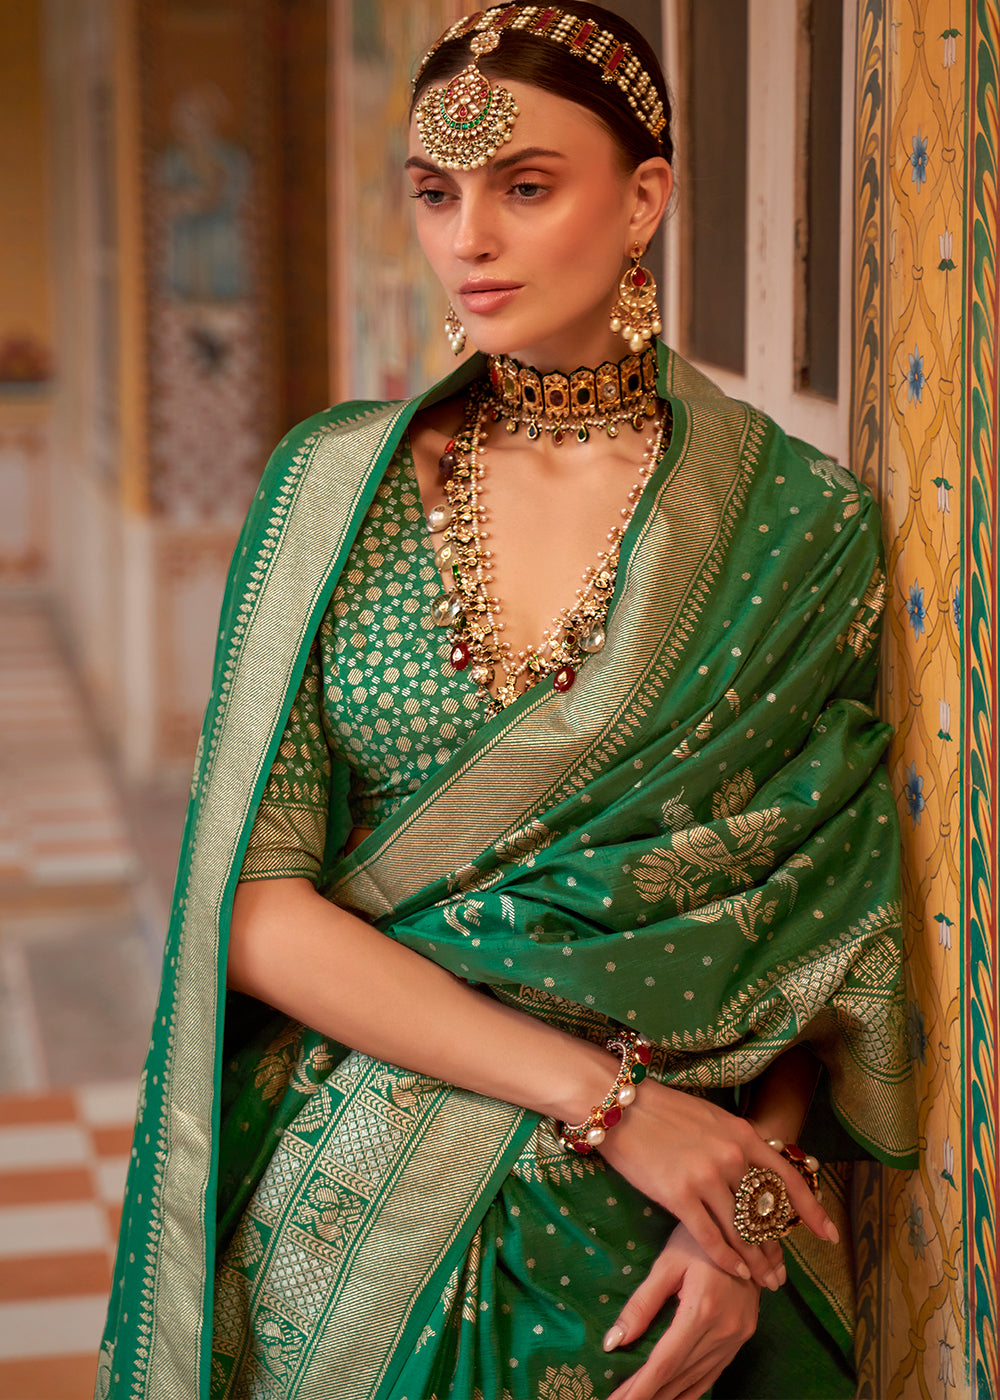 A Natural Beauty Exquisite Green Banarasi Silk Saree